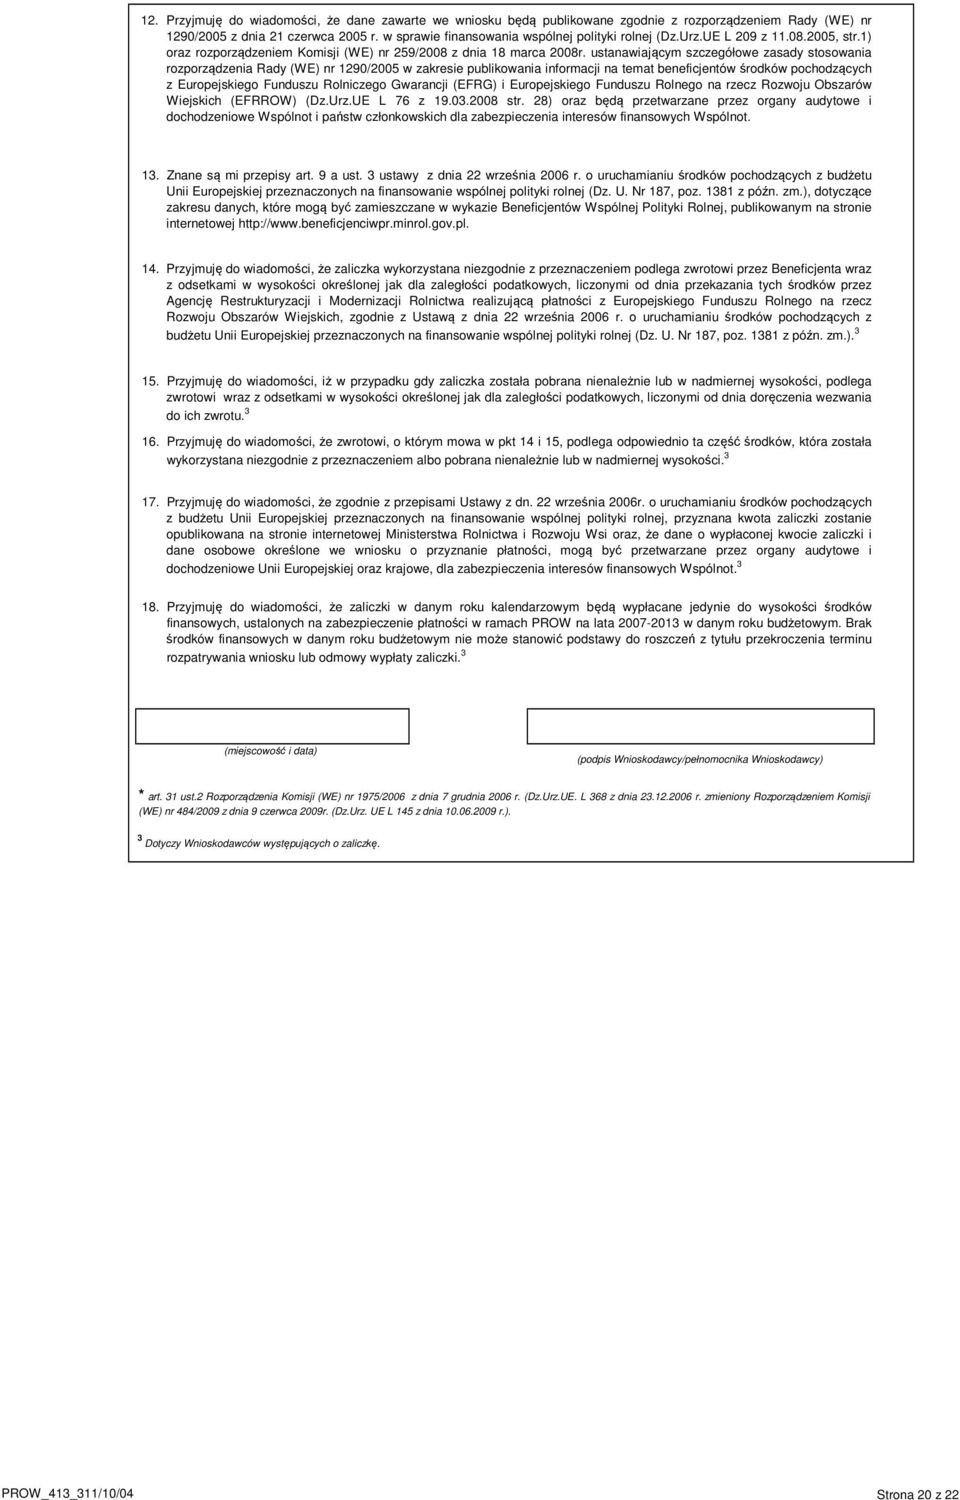 ustanawiającym szczegółowe zasady stosowania rozporządzenia Rady (WE) nr 1290/2005 w zakresie publikowania informacji na temat beneficjentów środków pochodzących z Europejskiego Funduszu Rolniczego